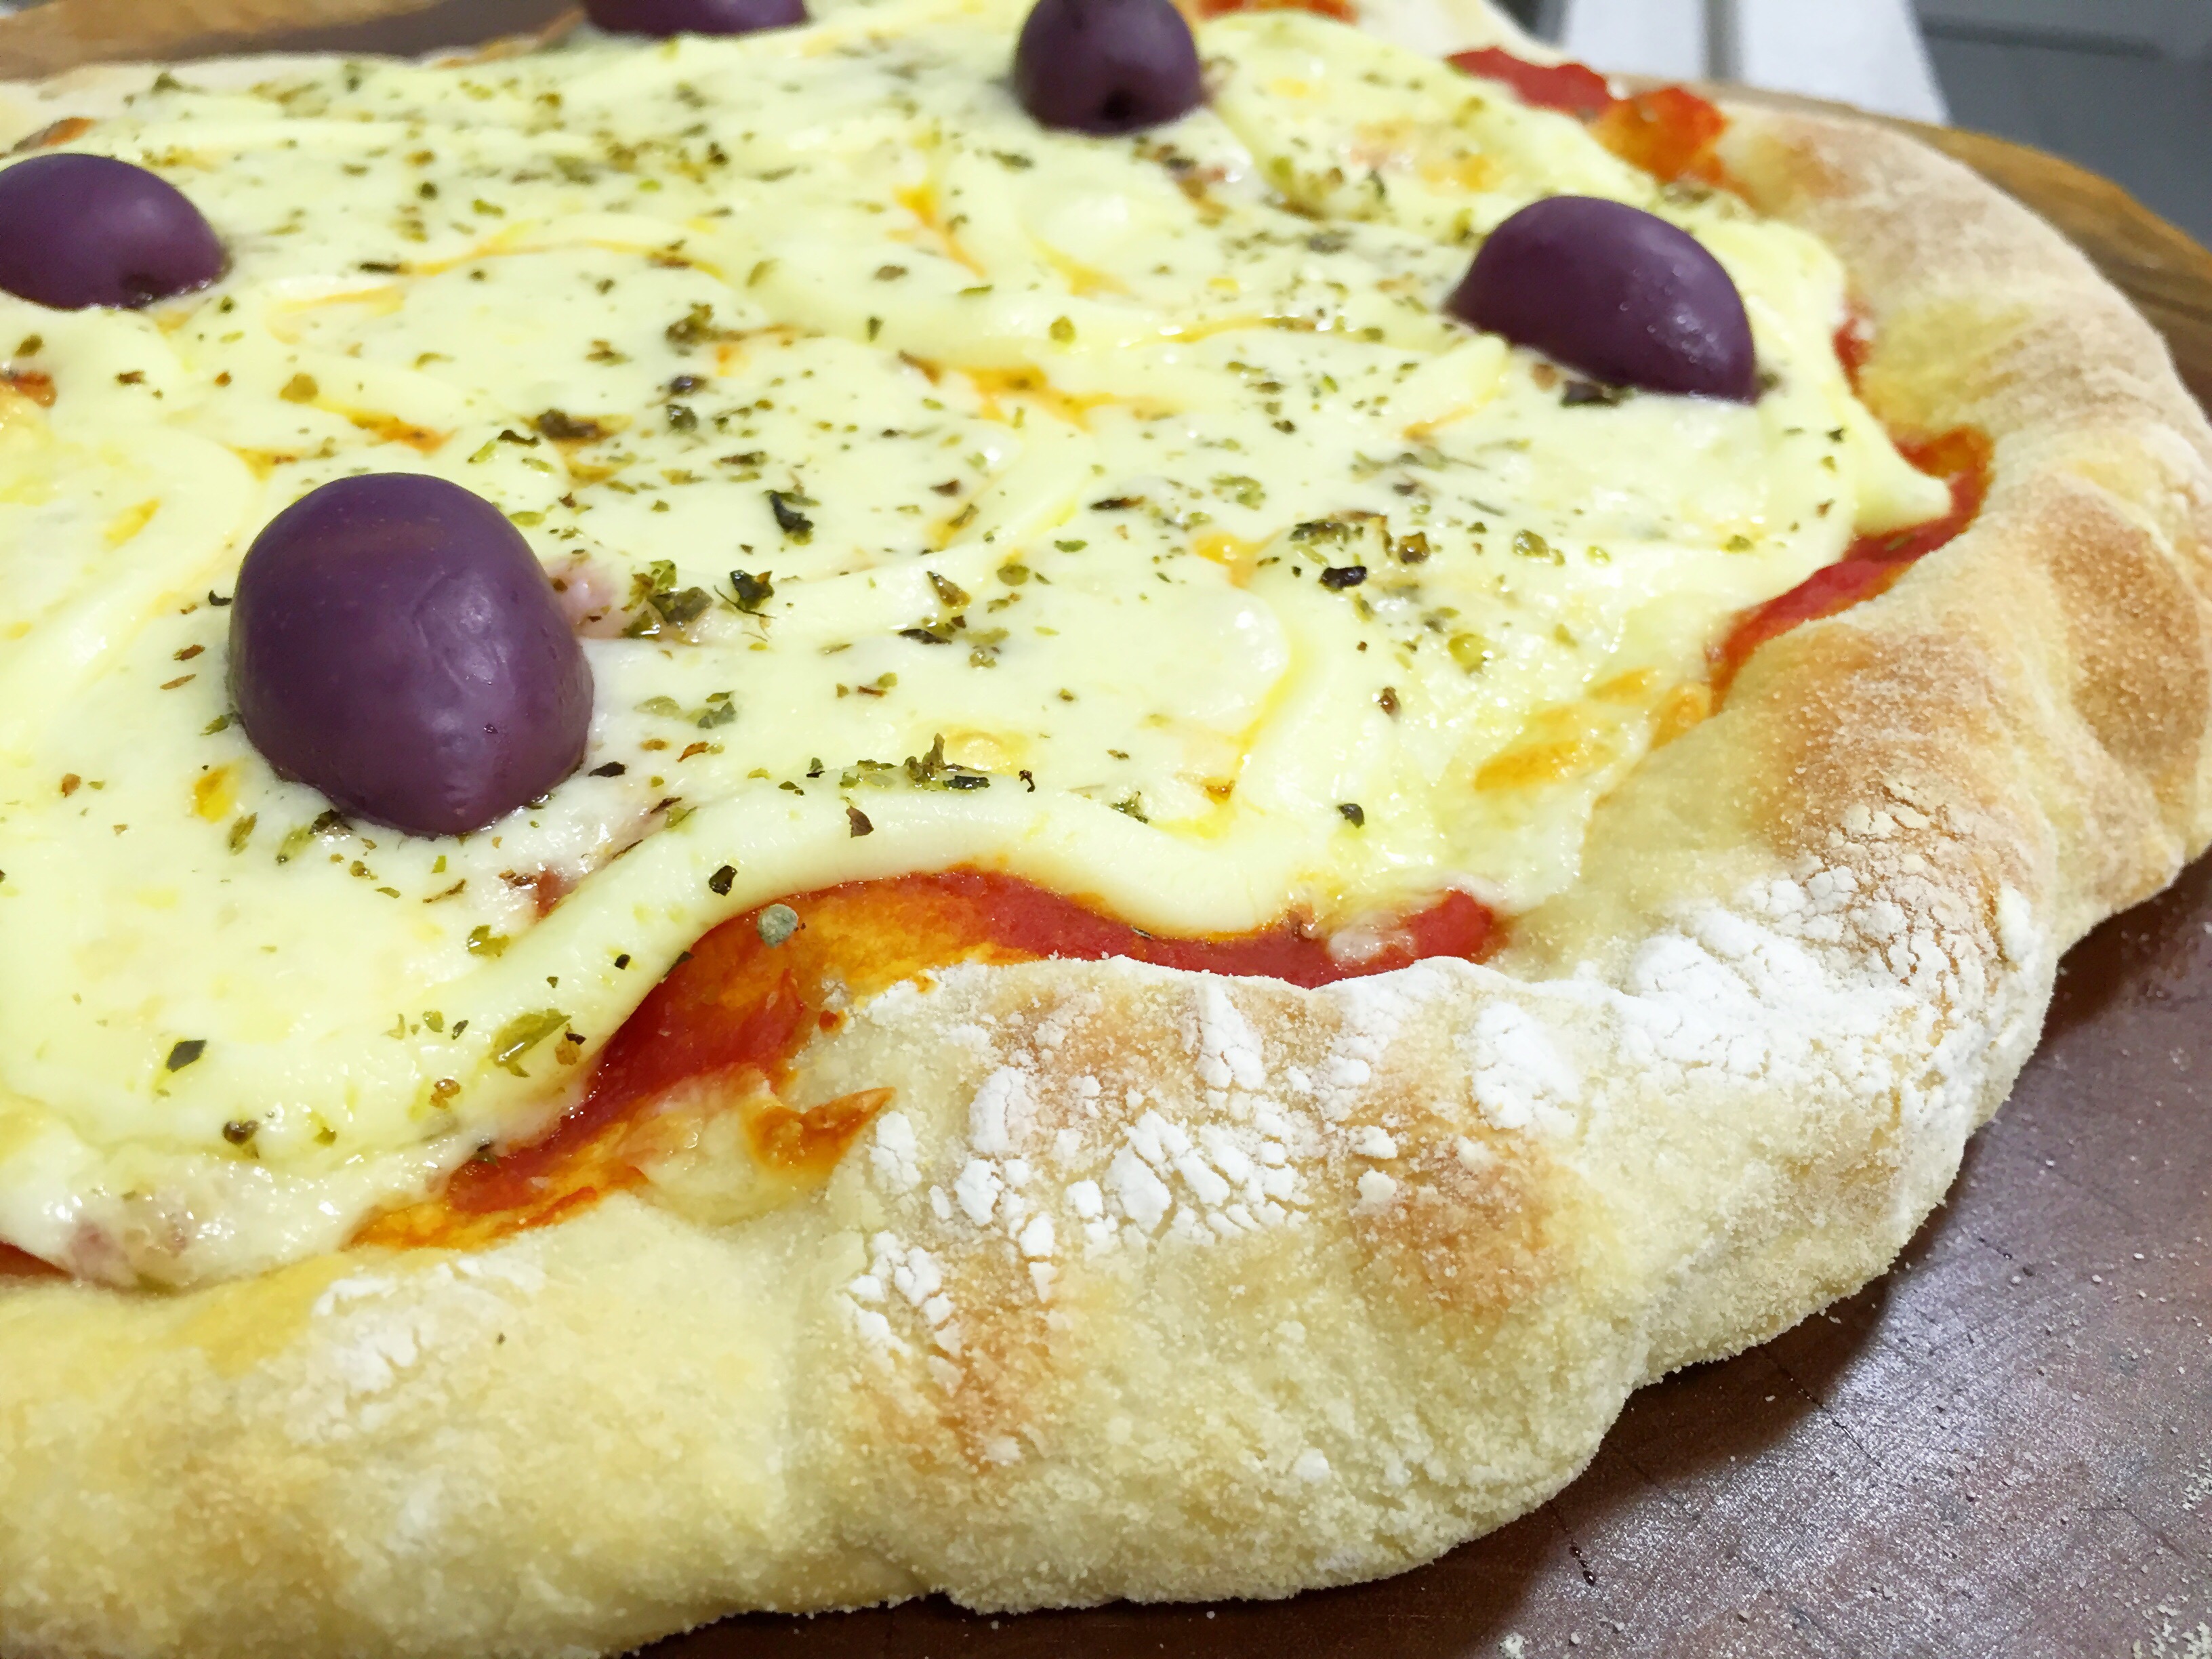 Receita de pizza siciliana caseira da Rita Lobo